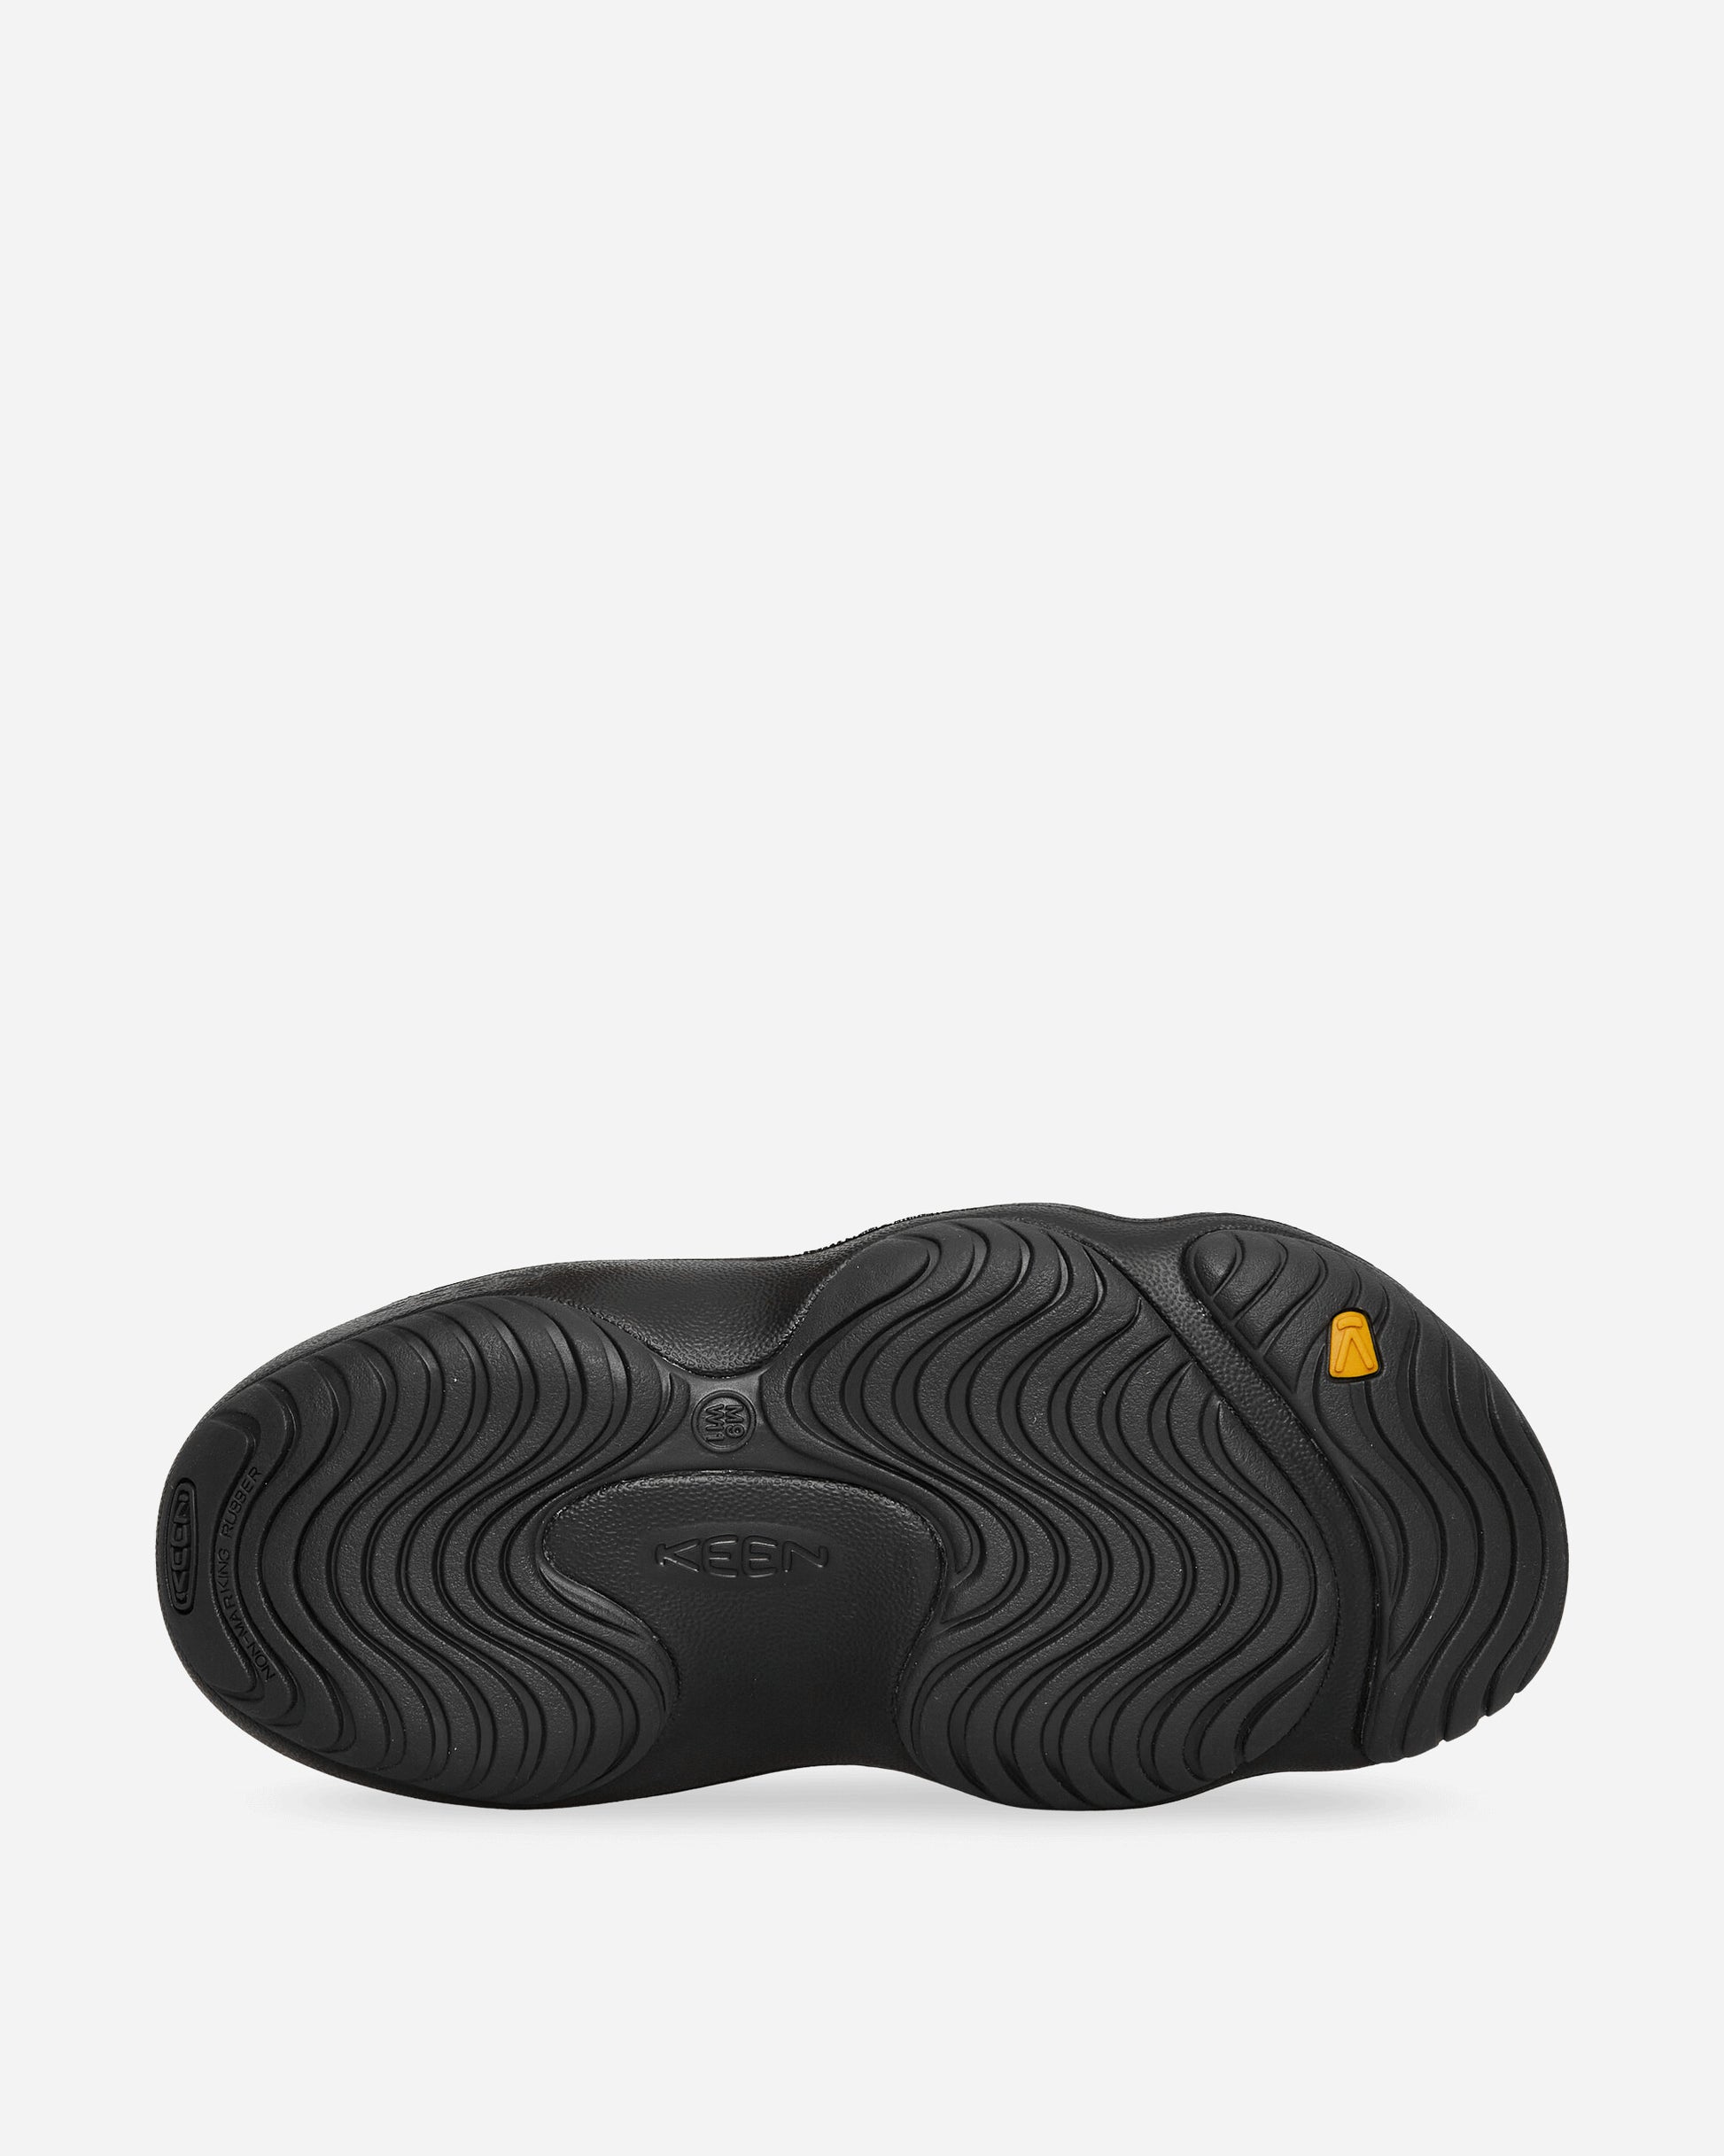 Keen Yogui Black/Magnet Sandals and Slides Slides 1028957 001